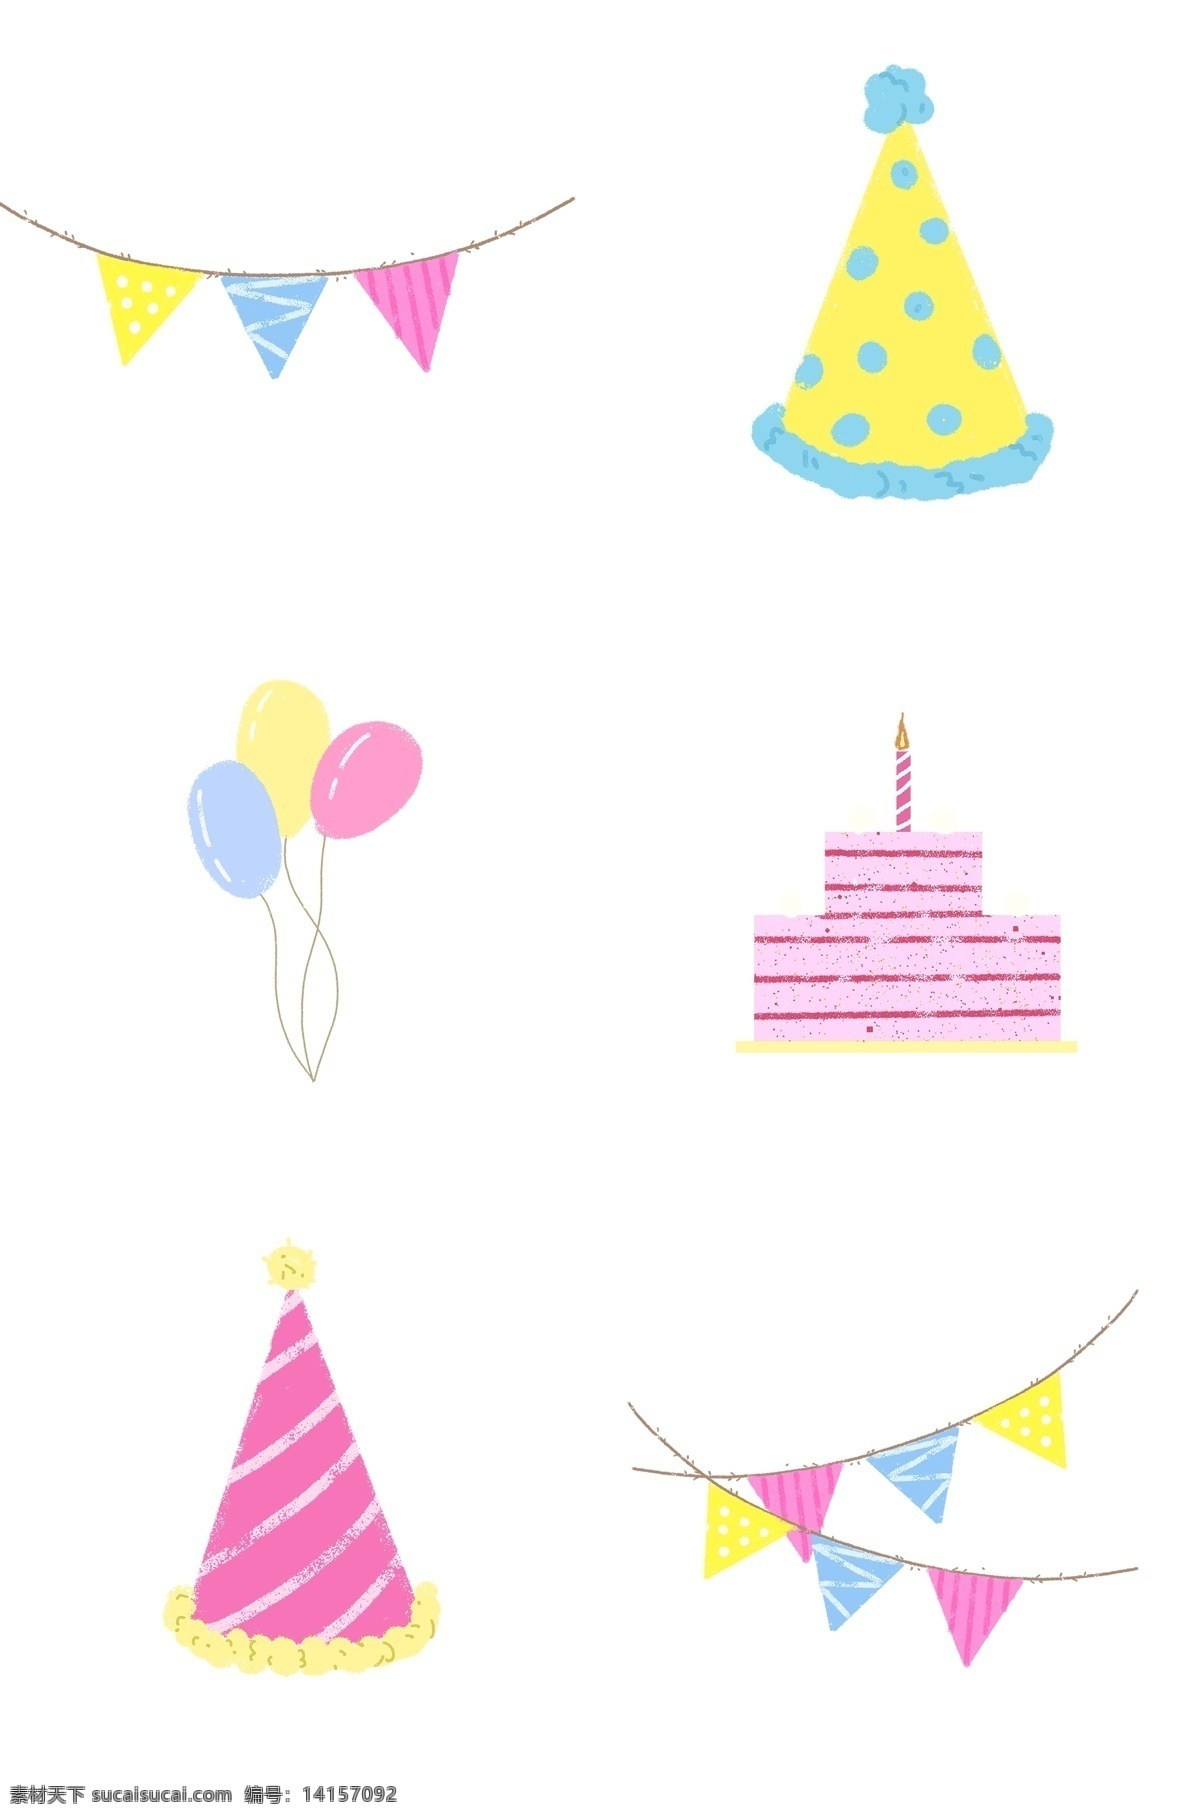 卡通 可爱 生日 装饰 派对 彩色 旗子 宿舍 插画 手绘 蛋糕 粉色 少女 红黄蓝 气球